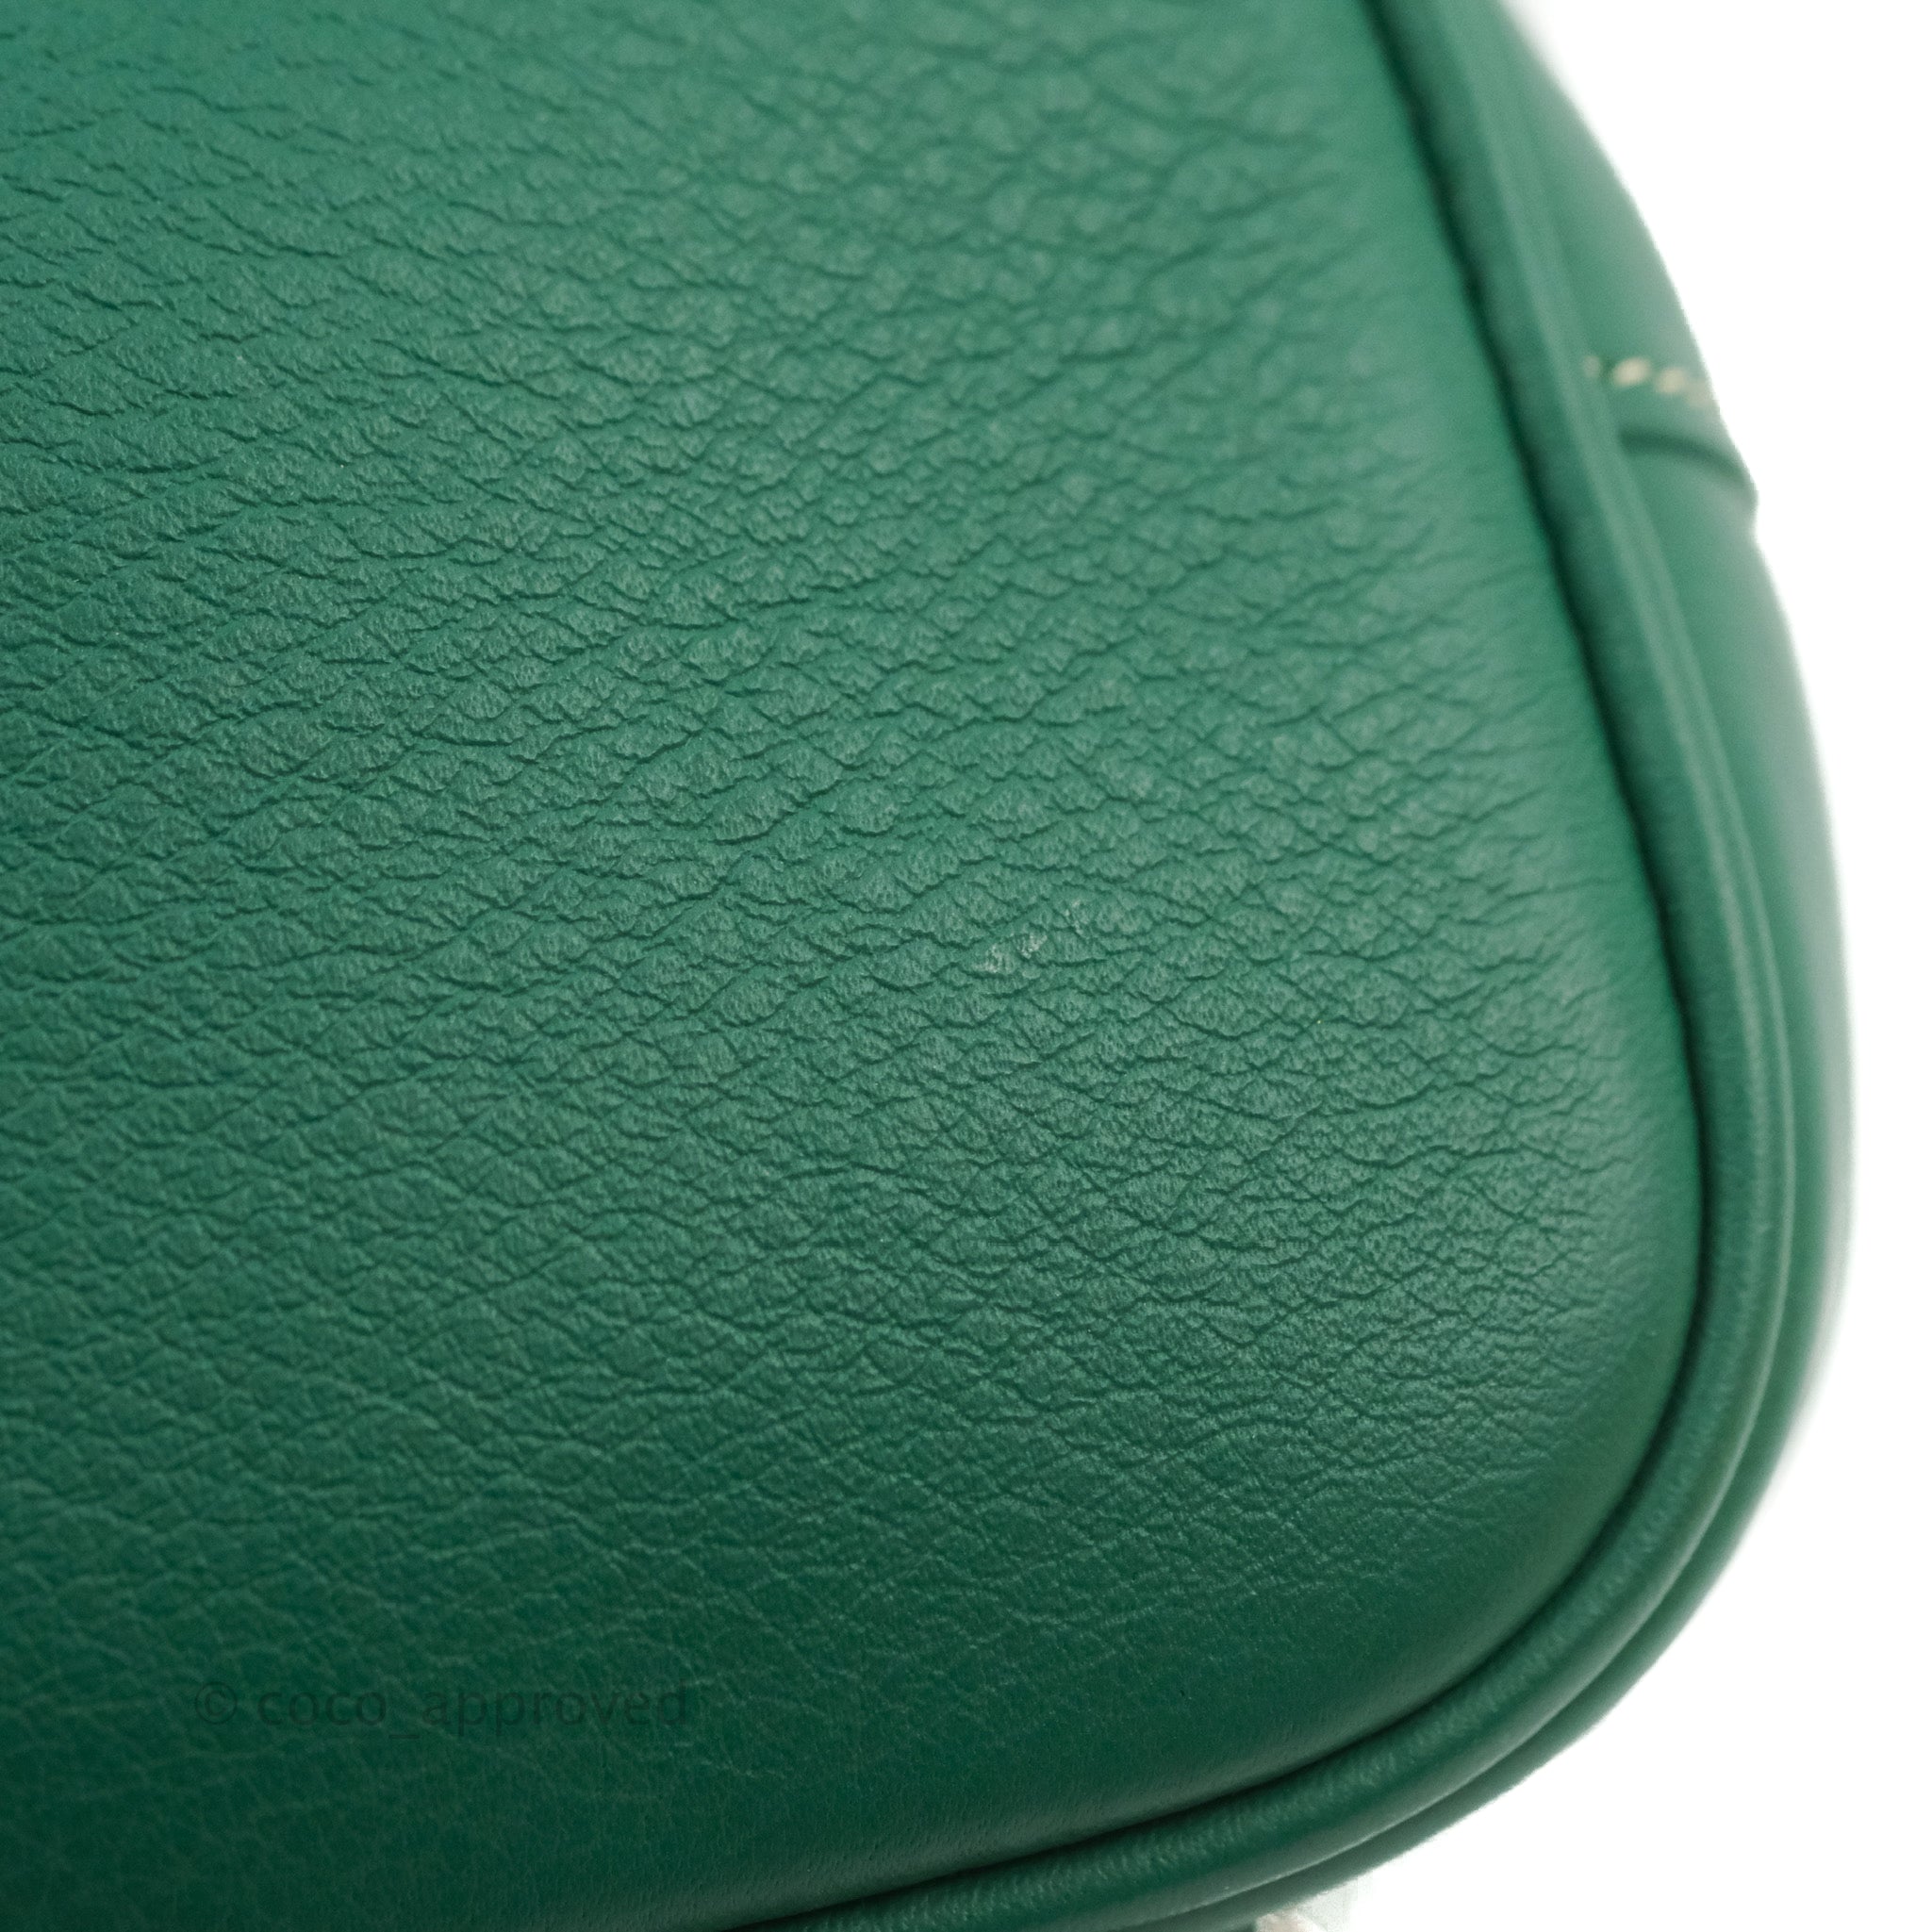 Goyard Mini Alpin Backpack Green Goyardine Calfskin – Coco